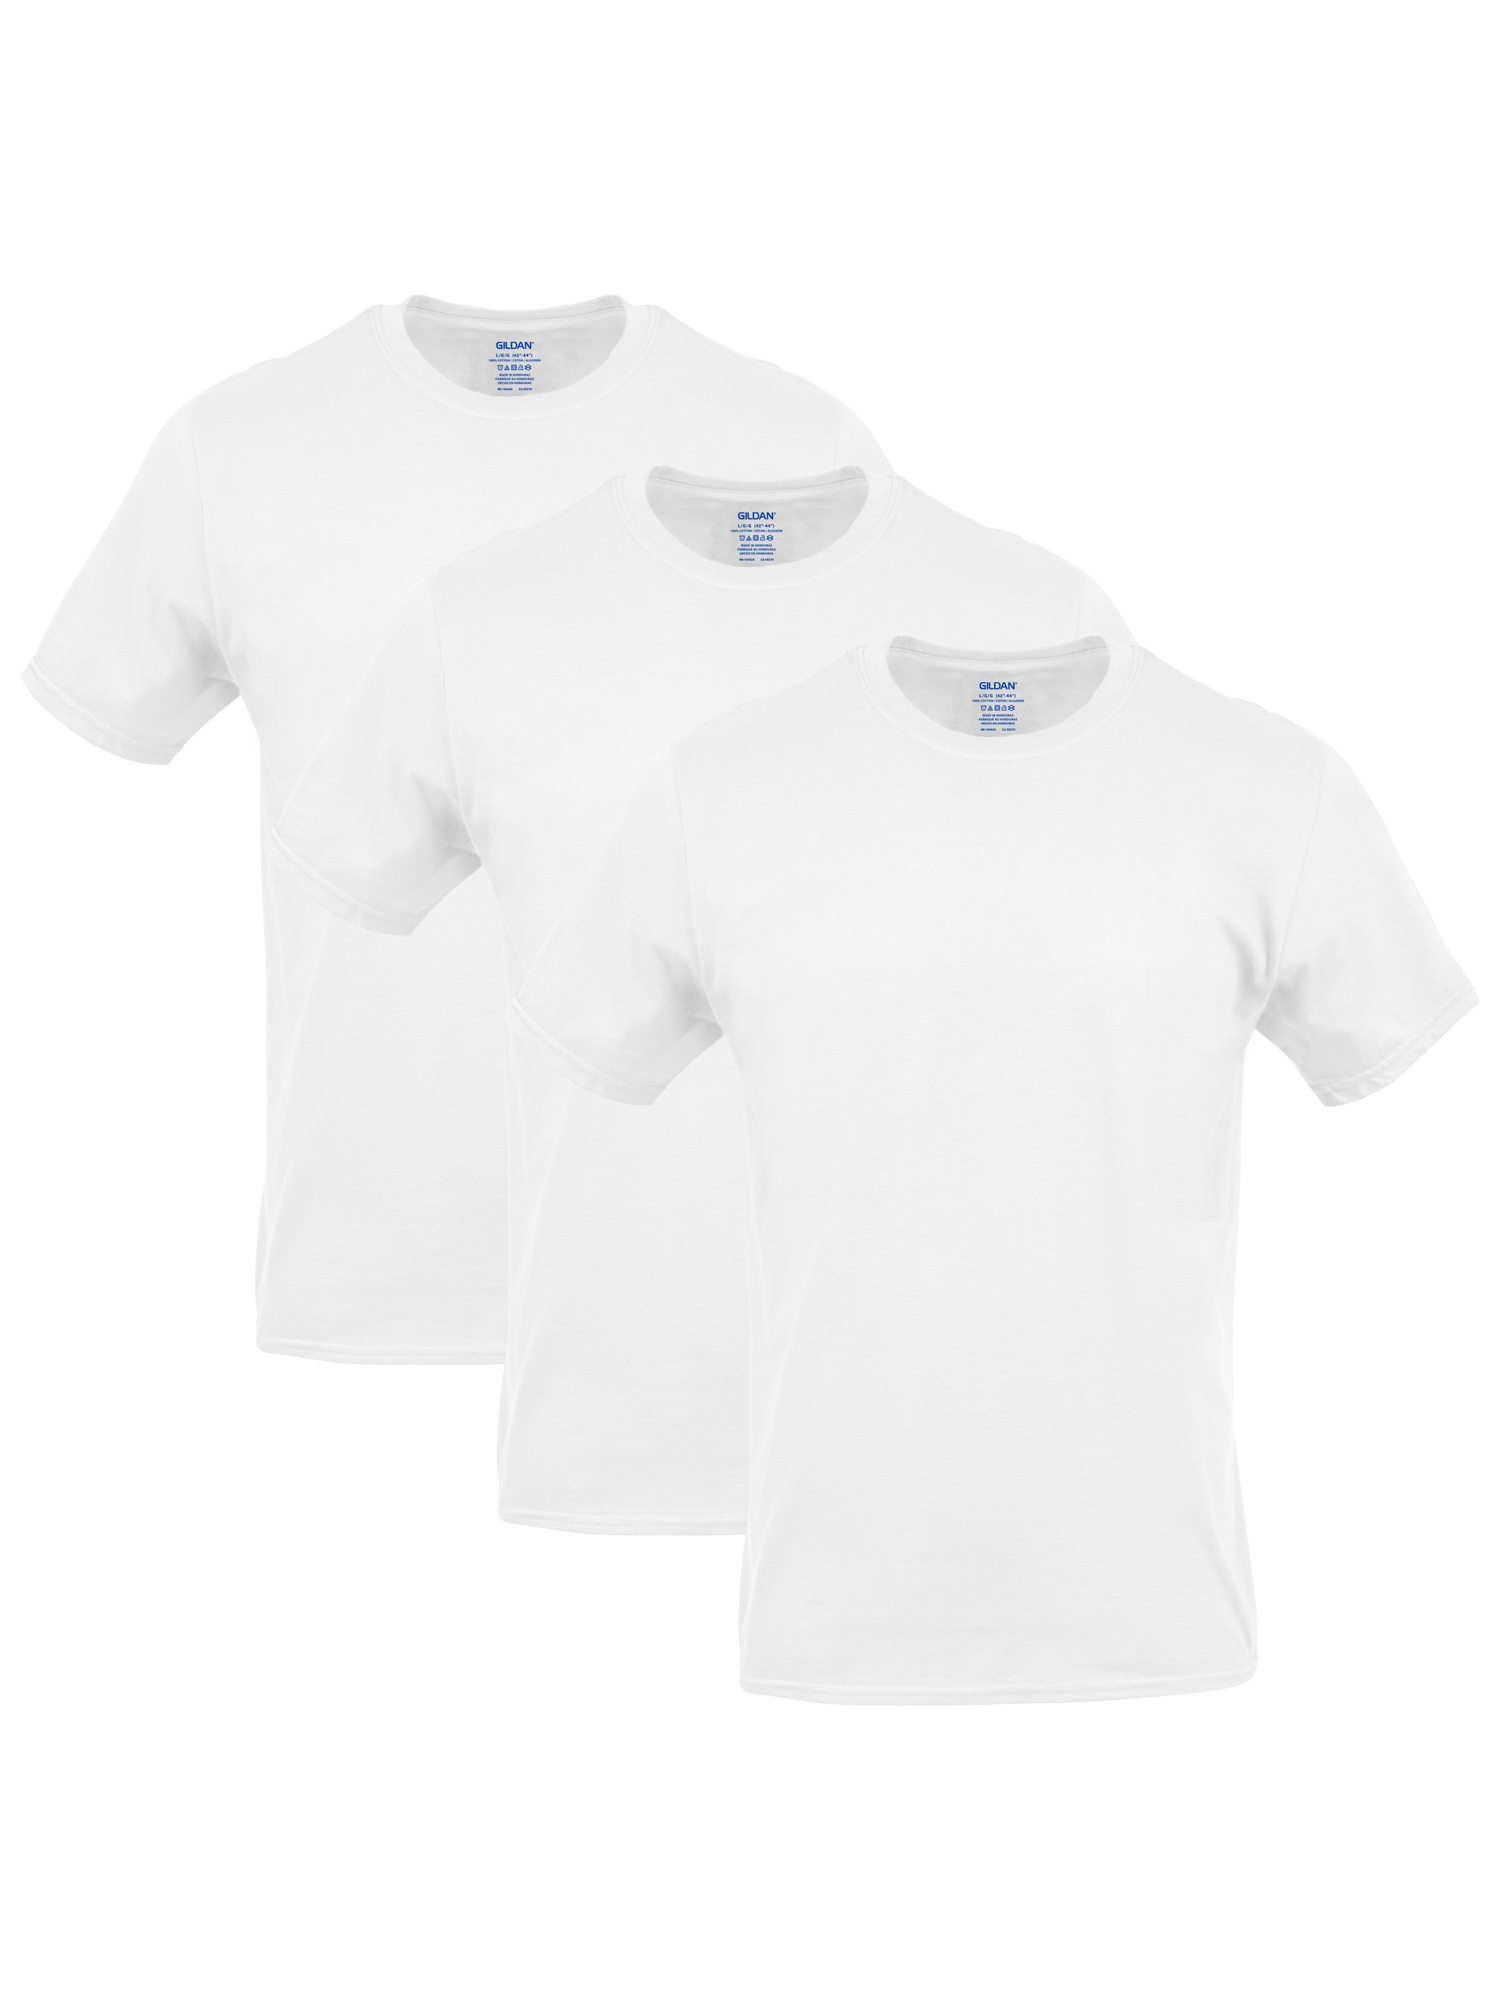 Gildan Men's Crew T-Shirts, 3-Pack - Walmart.com